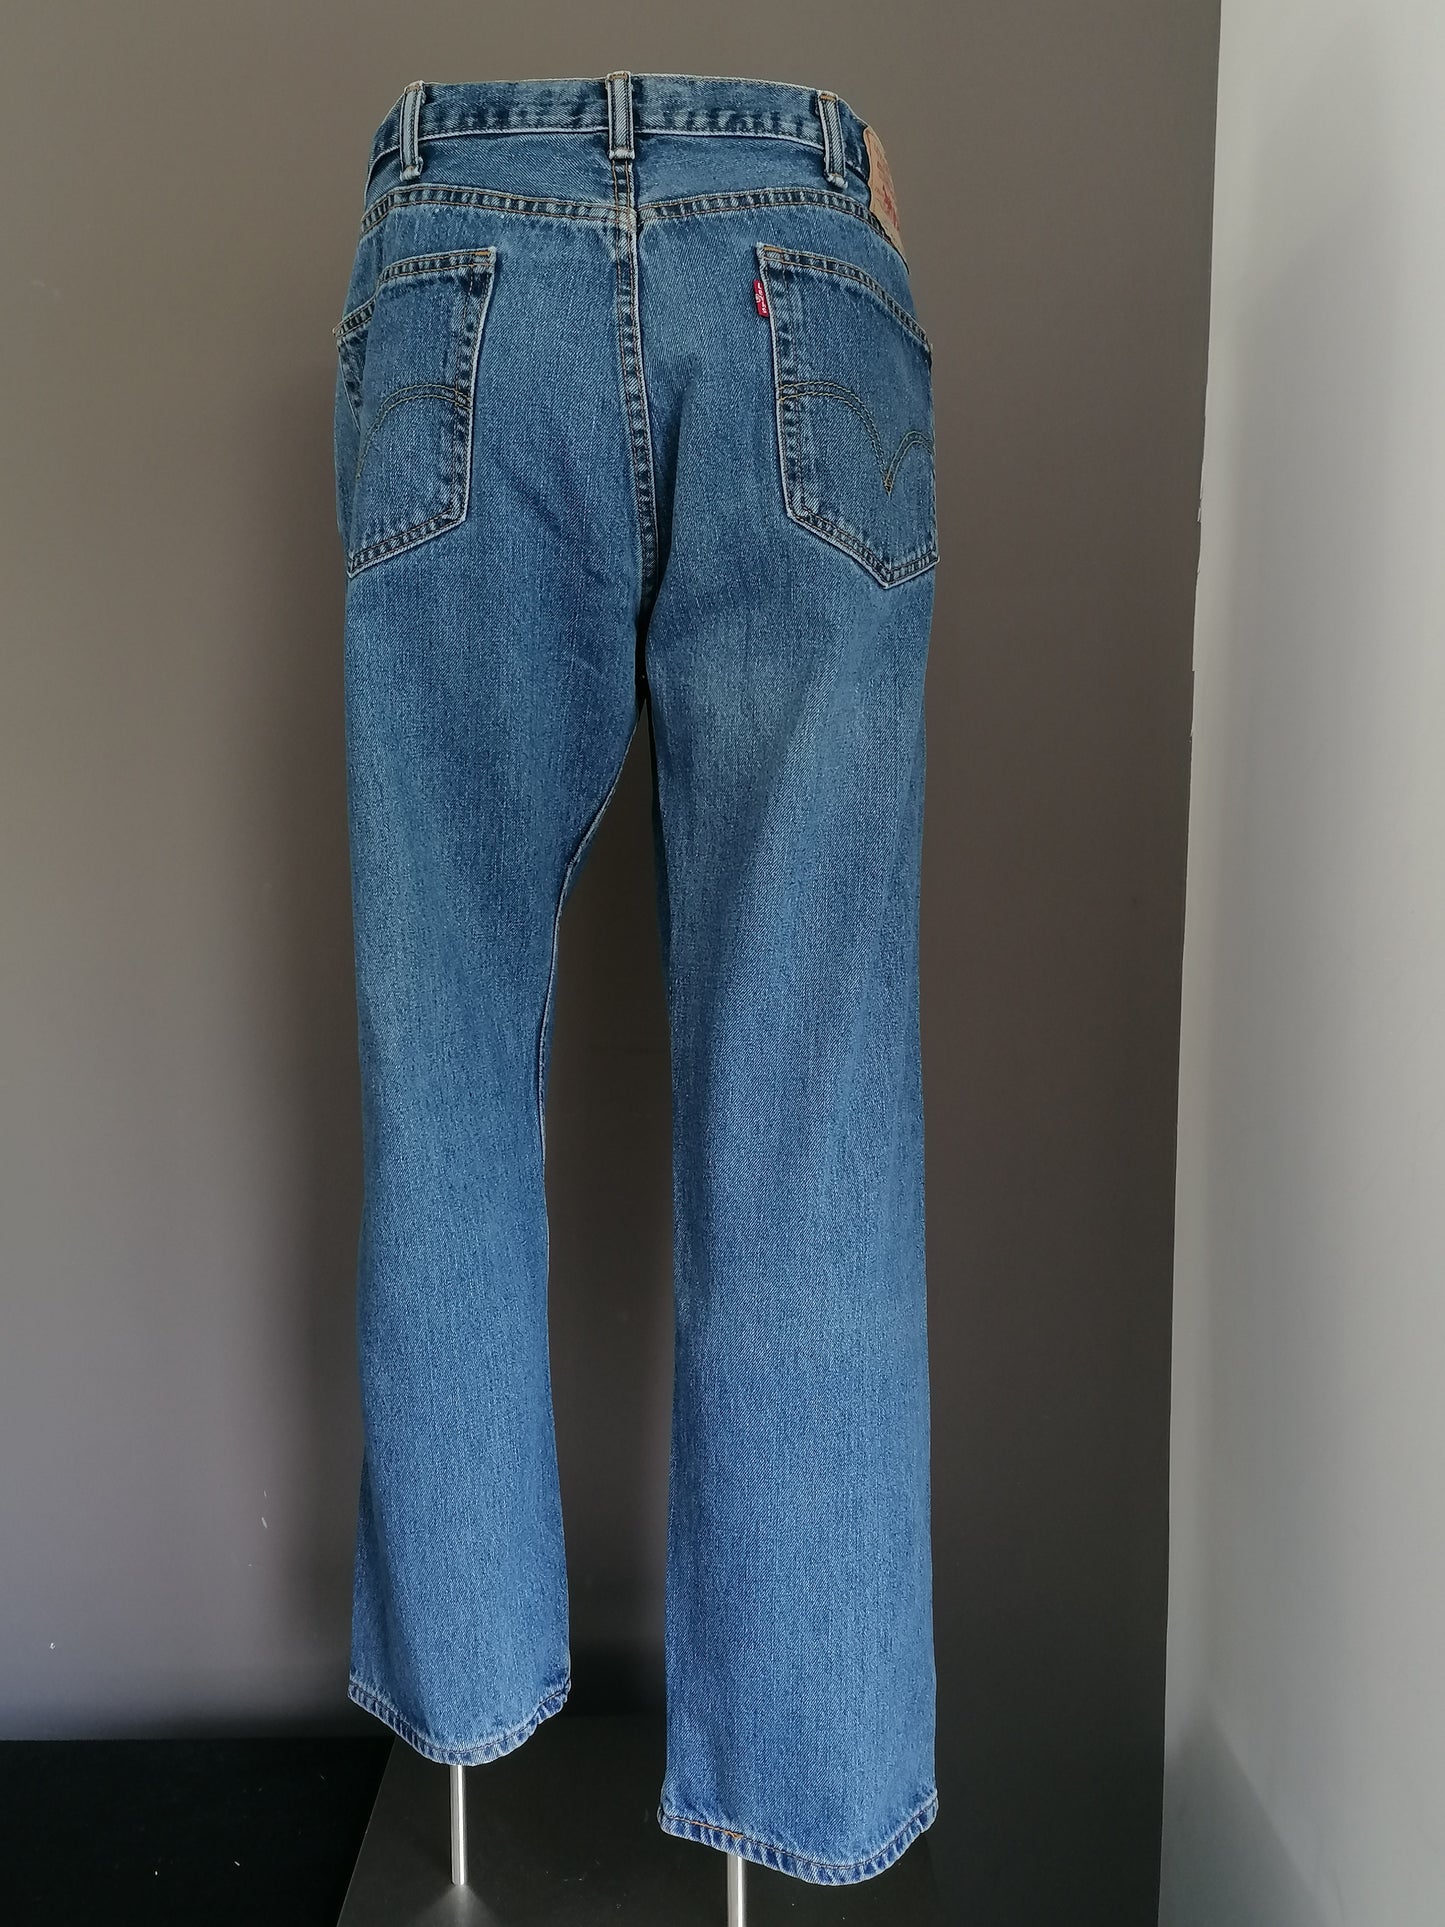 Levis 505 Jeans. Blau gefärbt. Größe W38 - L30. Gerade fit.